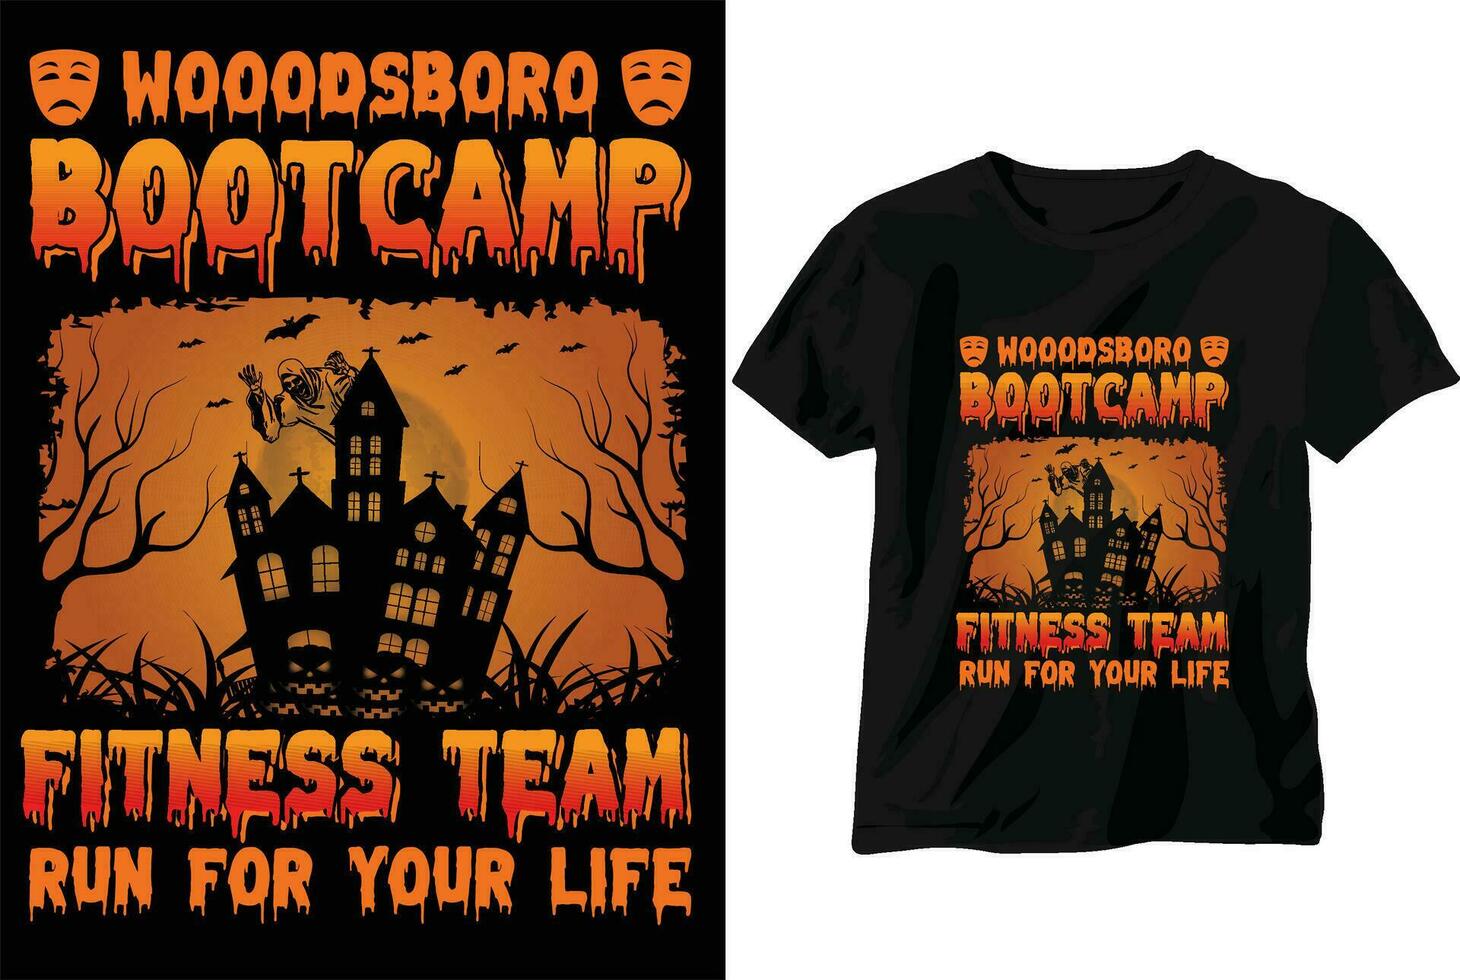 wooodsboro camp d'entraînement aptitude équipe courir pour votre la vie t chemise conception vecteur